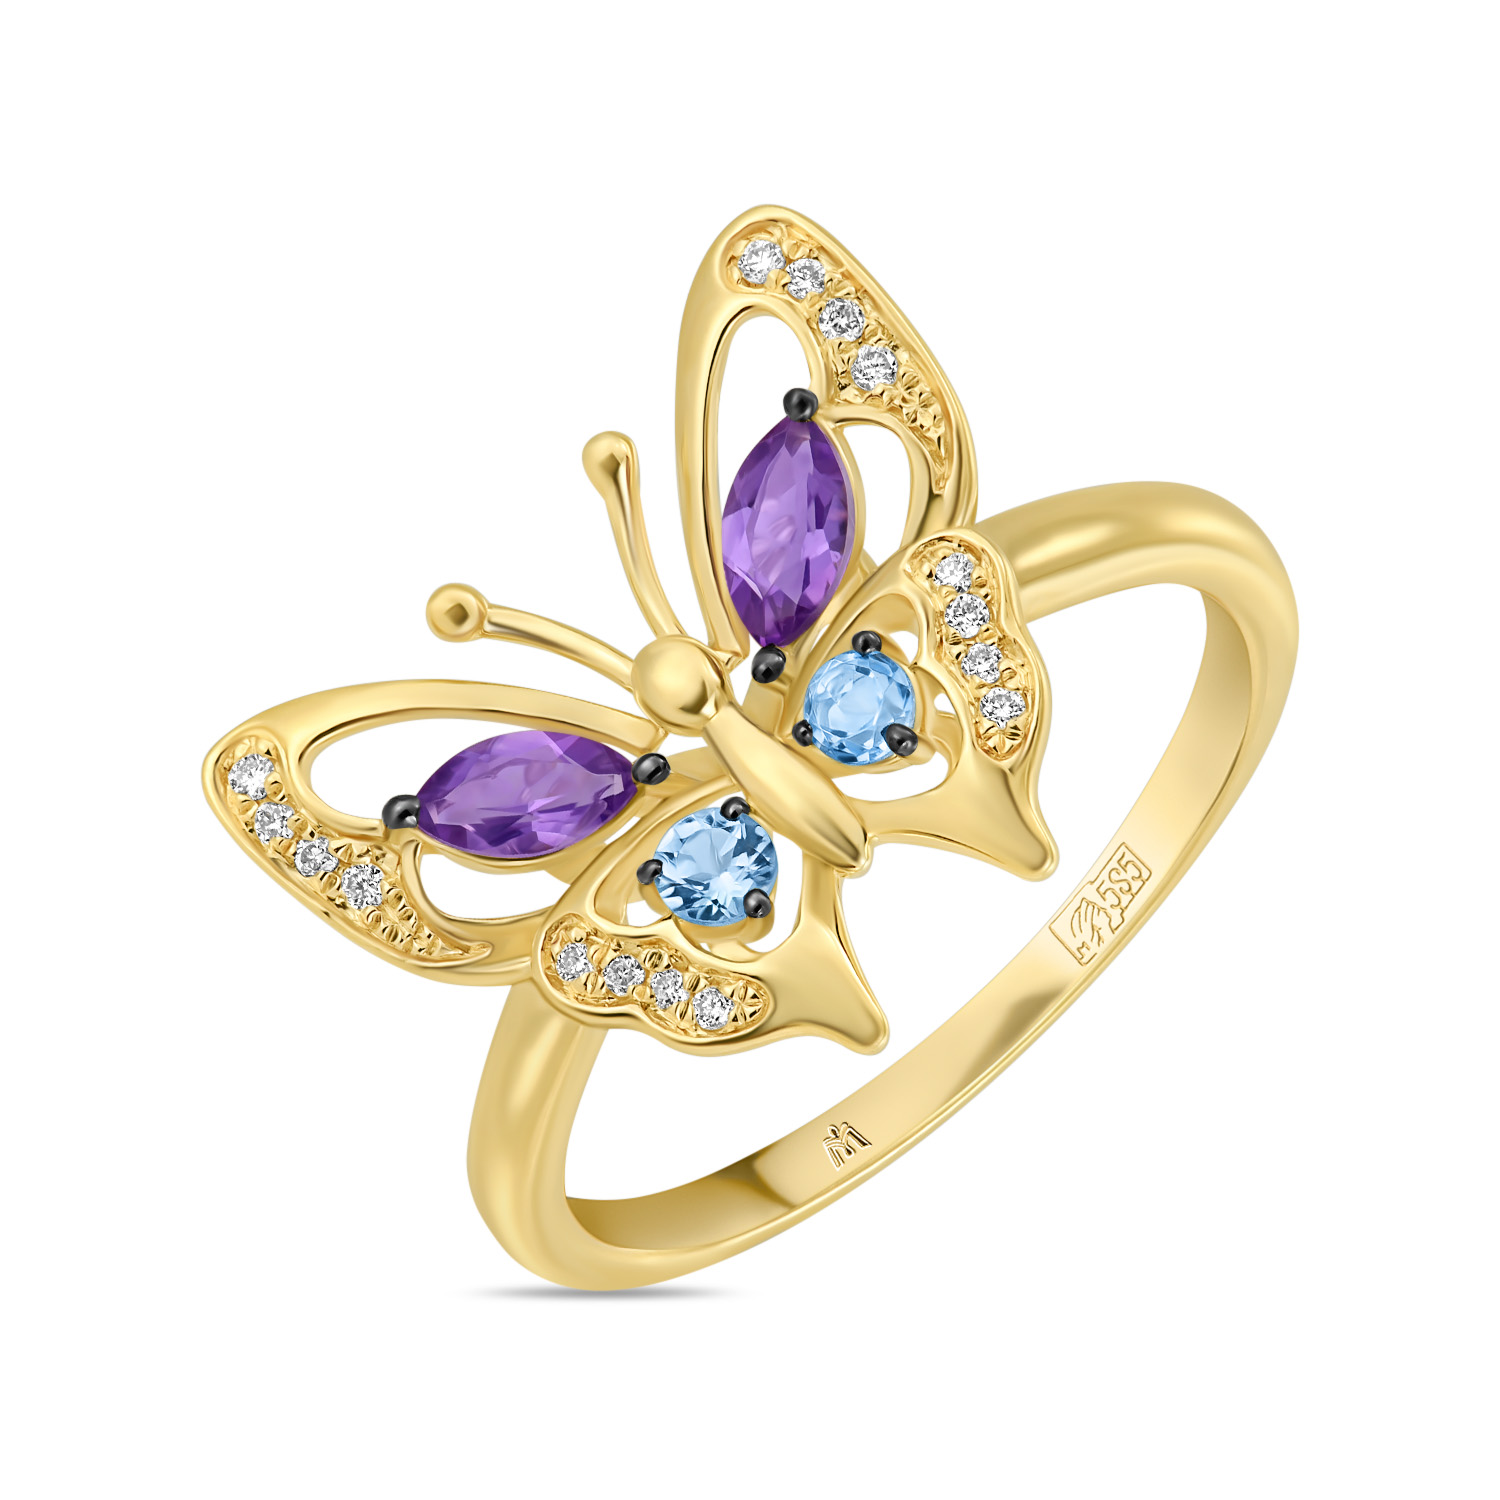 Кольца МЮЗ Золотое кольцо с аметистами, топазом и бриллиантами кольца мюз золотое кольцо с аметистами топазом и бриллиантами